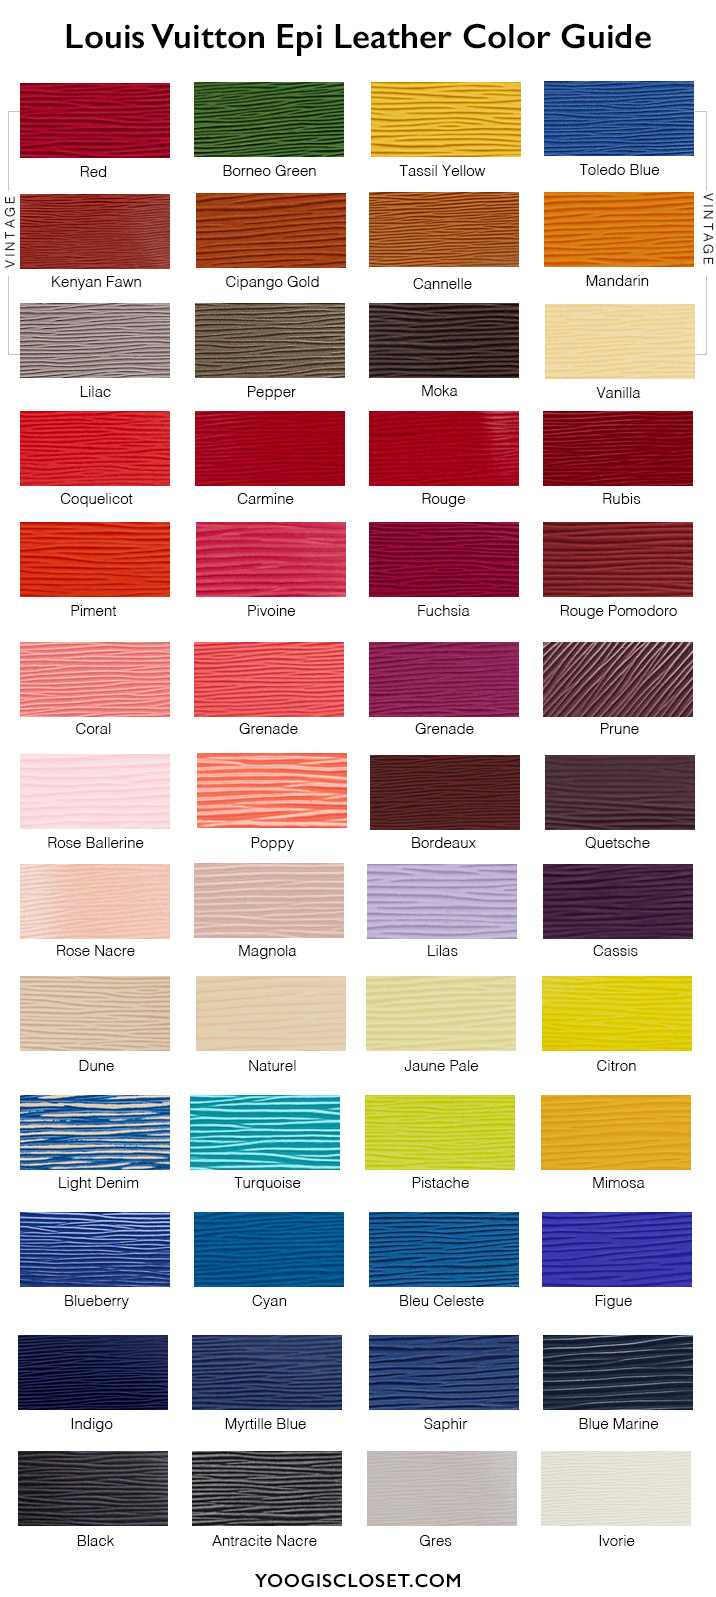 Louis Vuitton Epi Leather Color Guide | YoogisCloset.com